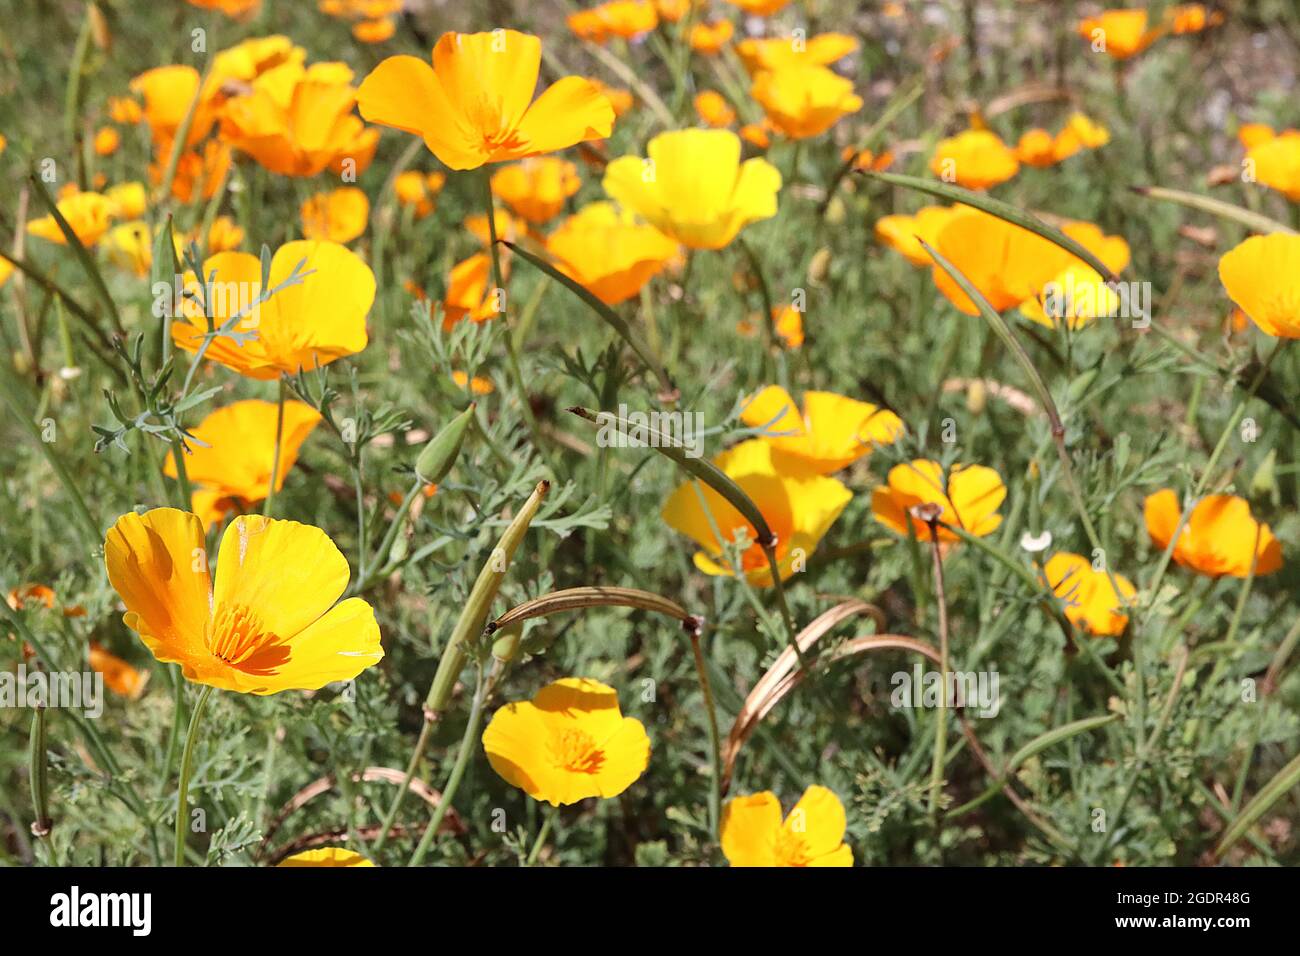 Escholzia californica GIALLO papavero californiano – fiori gialli dorati a forma di coppa setosa, luglio, Inghilterra, Regno Unito Foto Stock